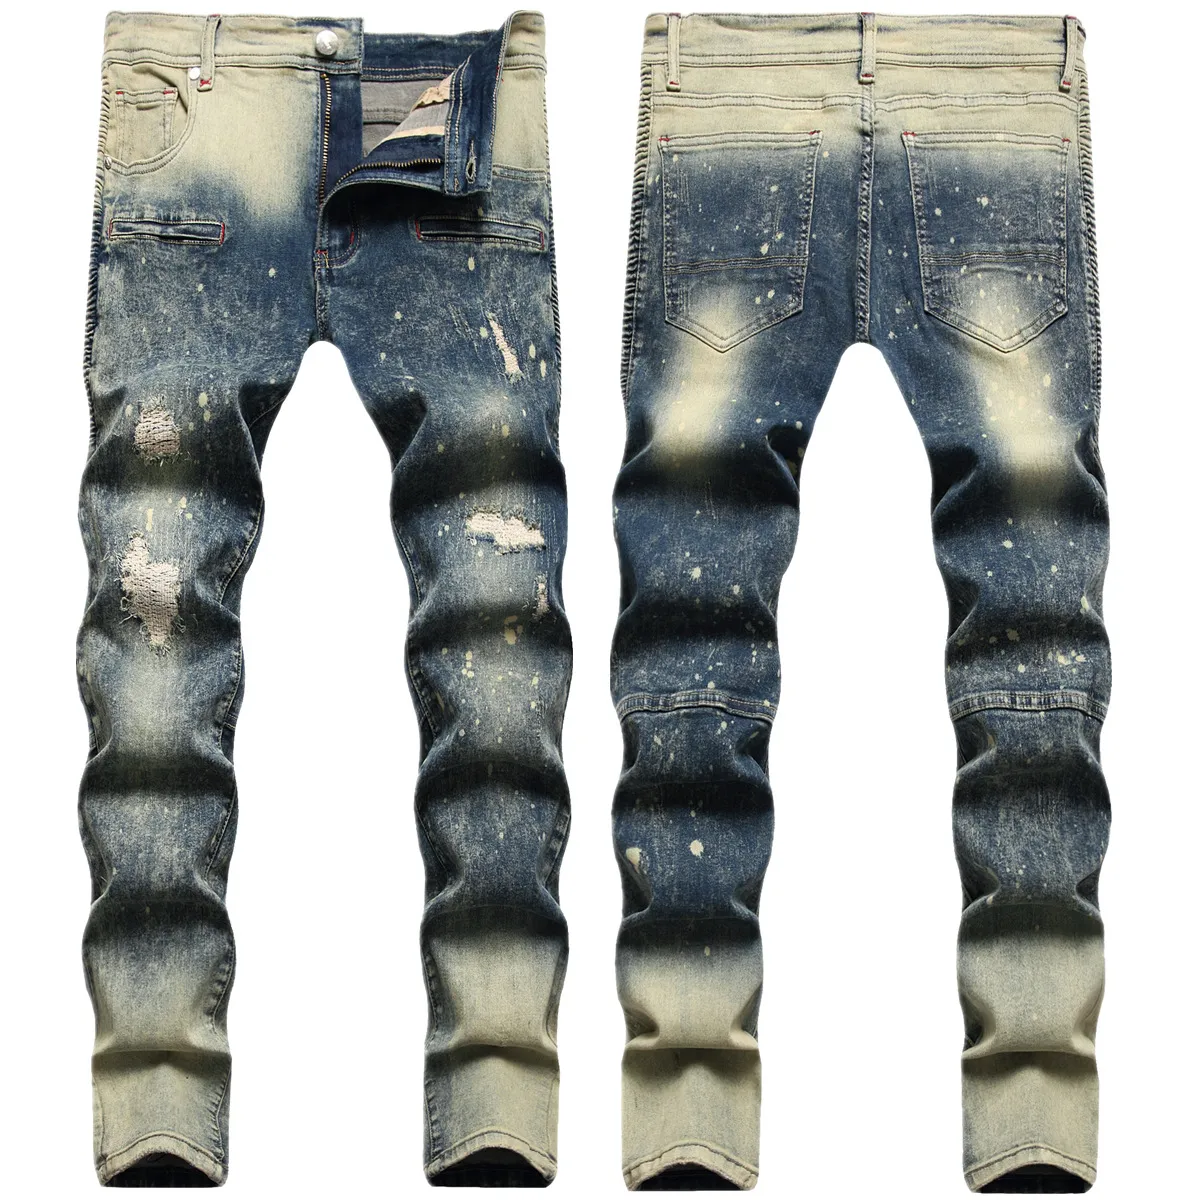 Jeans herr Europeisk amerikansk trendig manlig hiphop-tvättad gradientfärgad byxa Slimma jeansbyxor med raka ben